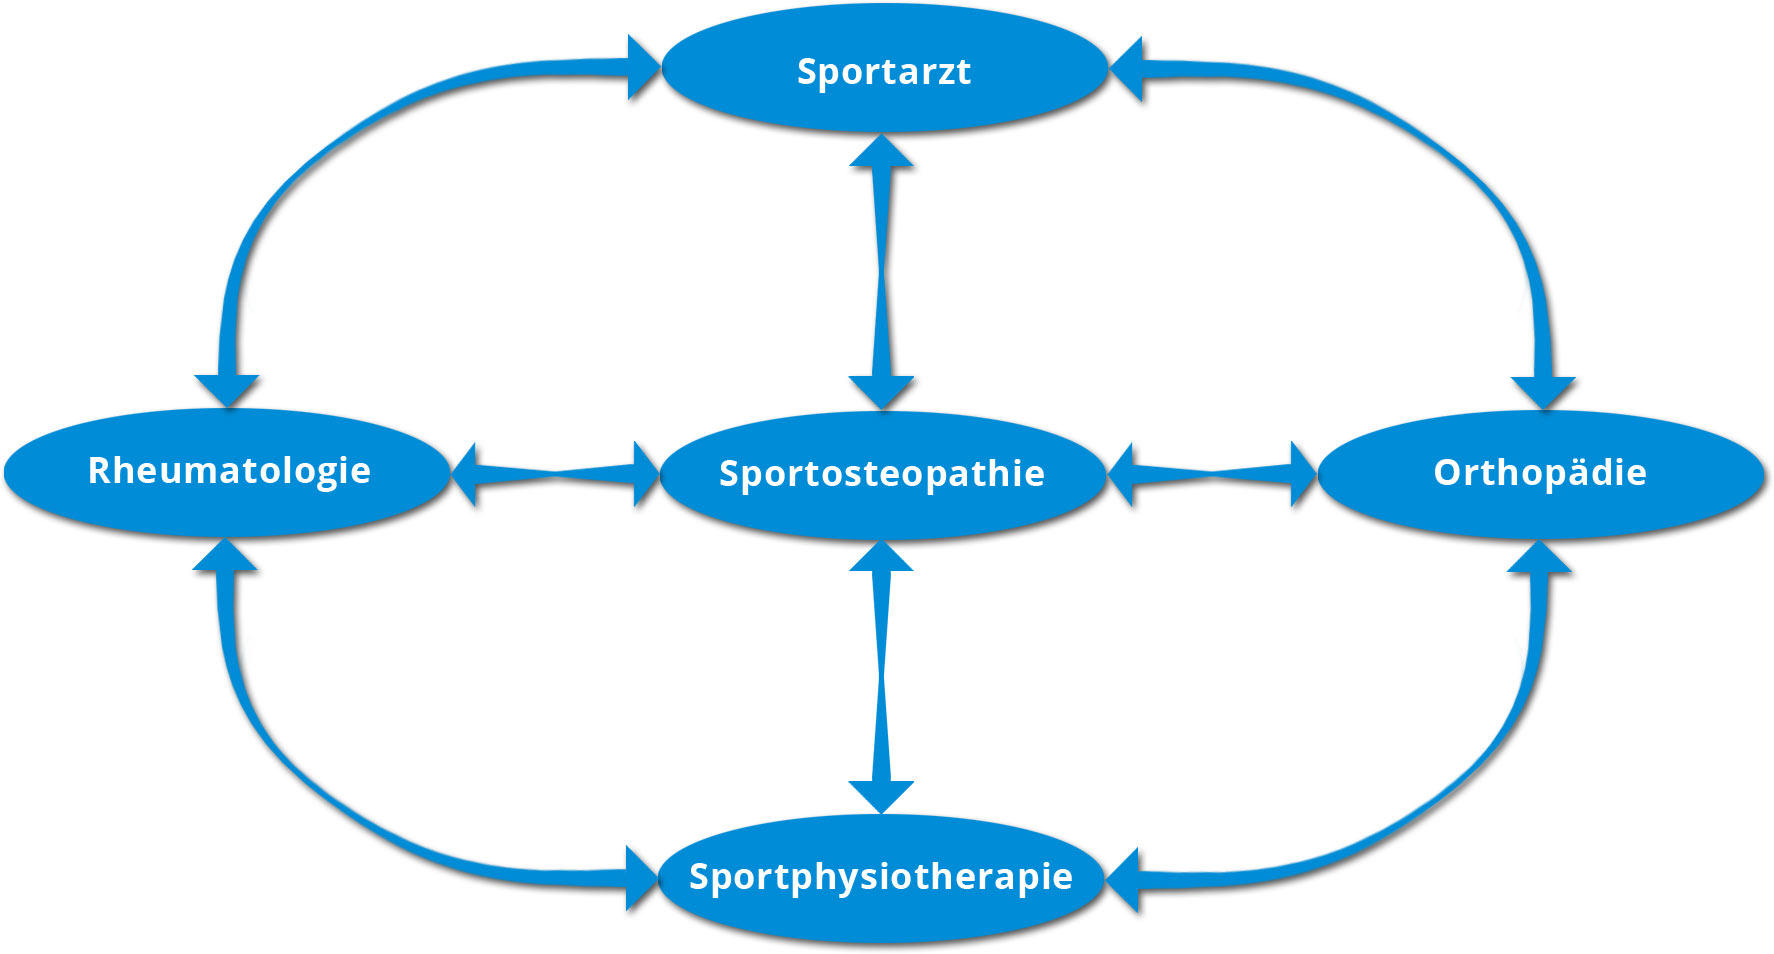 Sportosteopathie in Zusammenarbeit mit anderen Fachrichtigungen